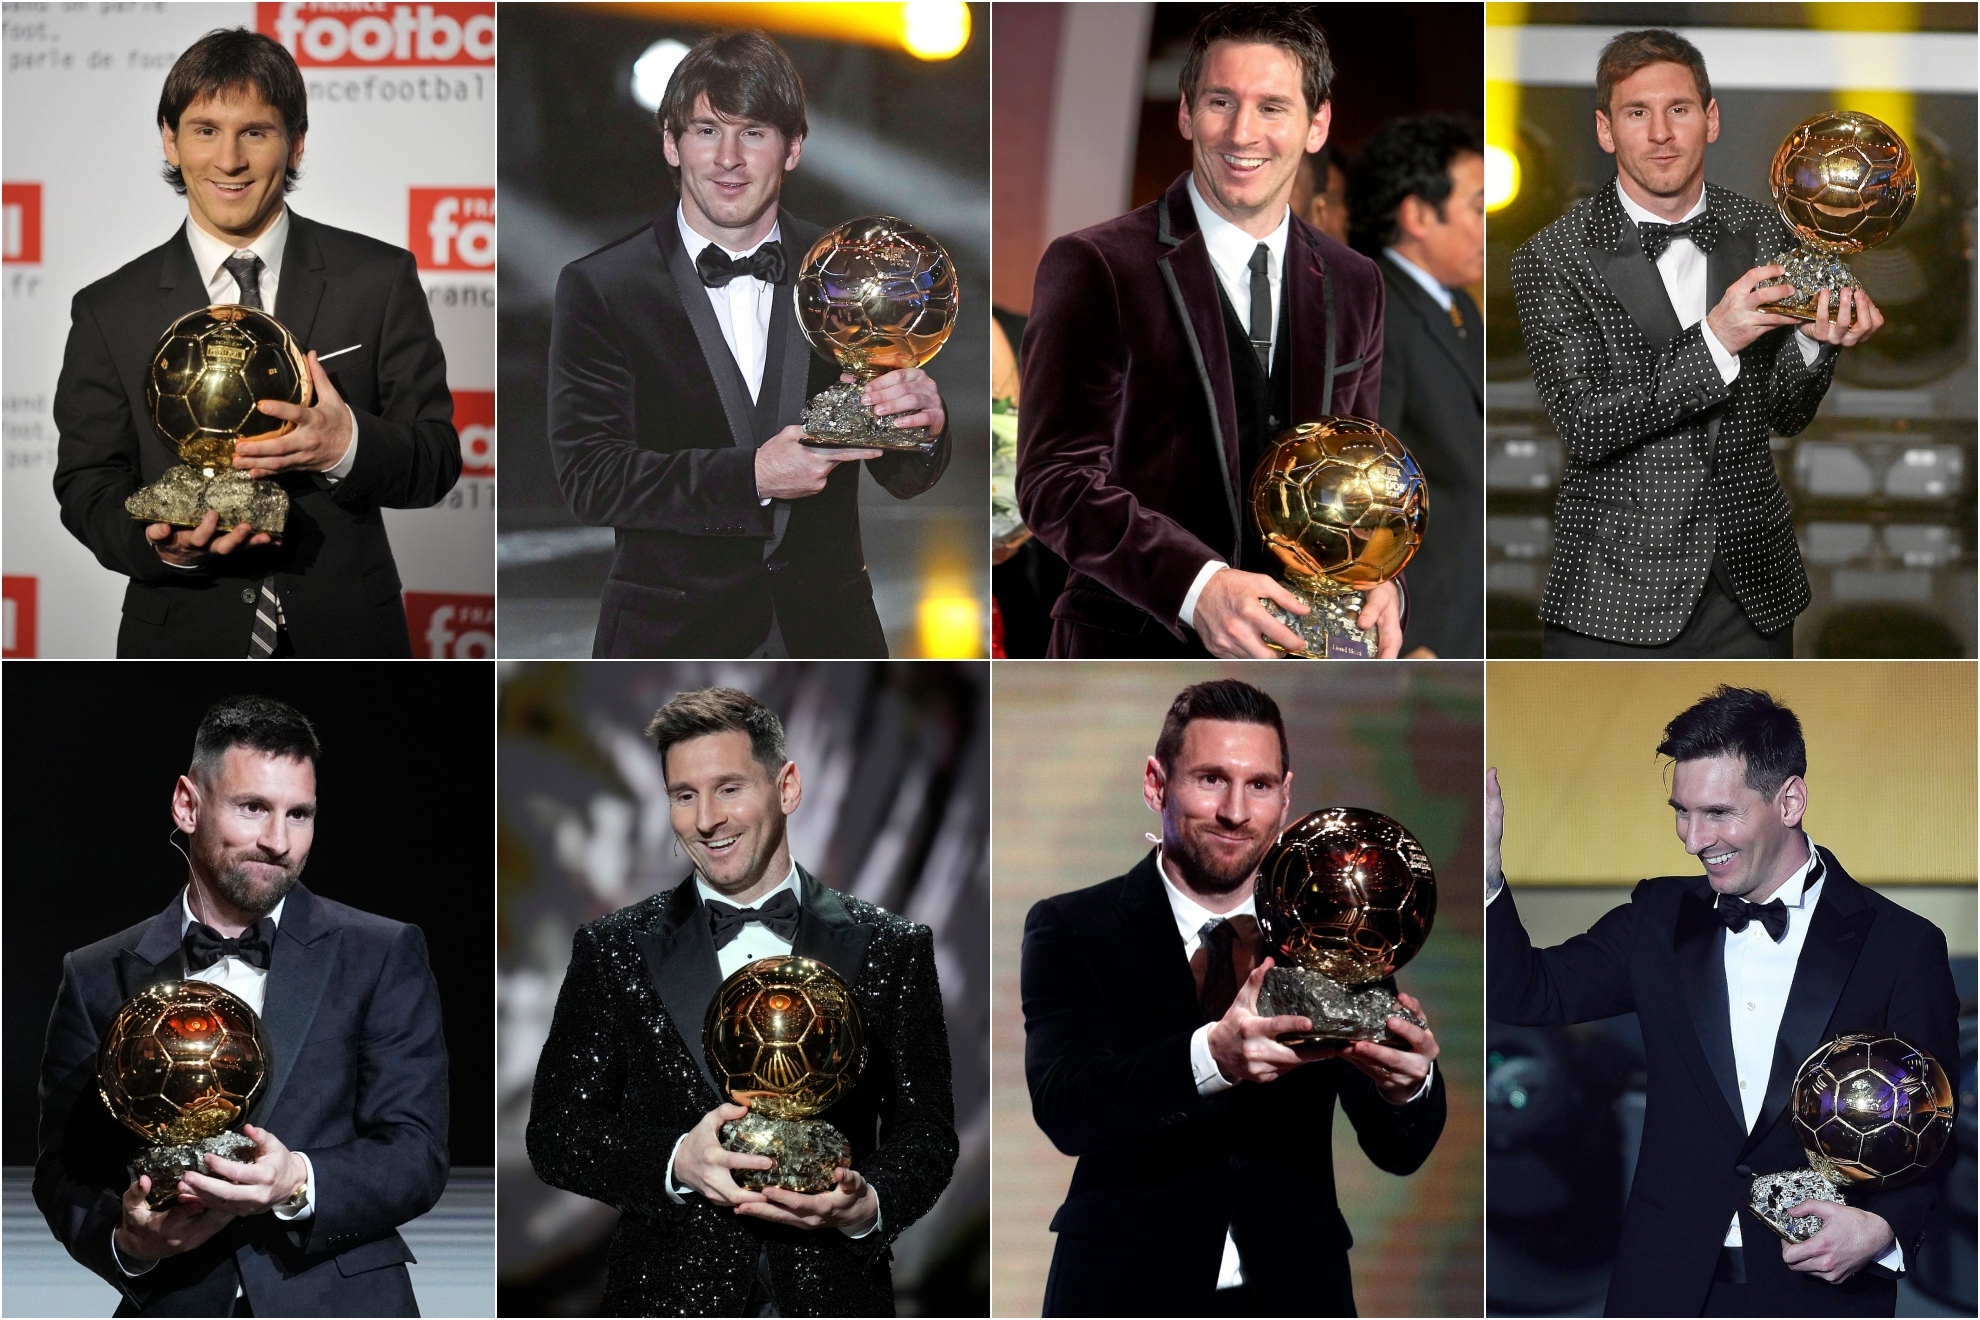 La colección dorada de Messi. ¿Será alguien capaz de repetirlo?